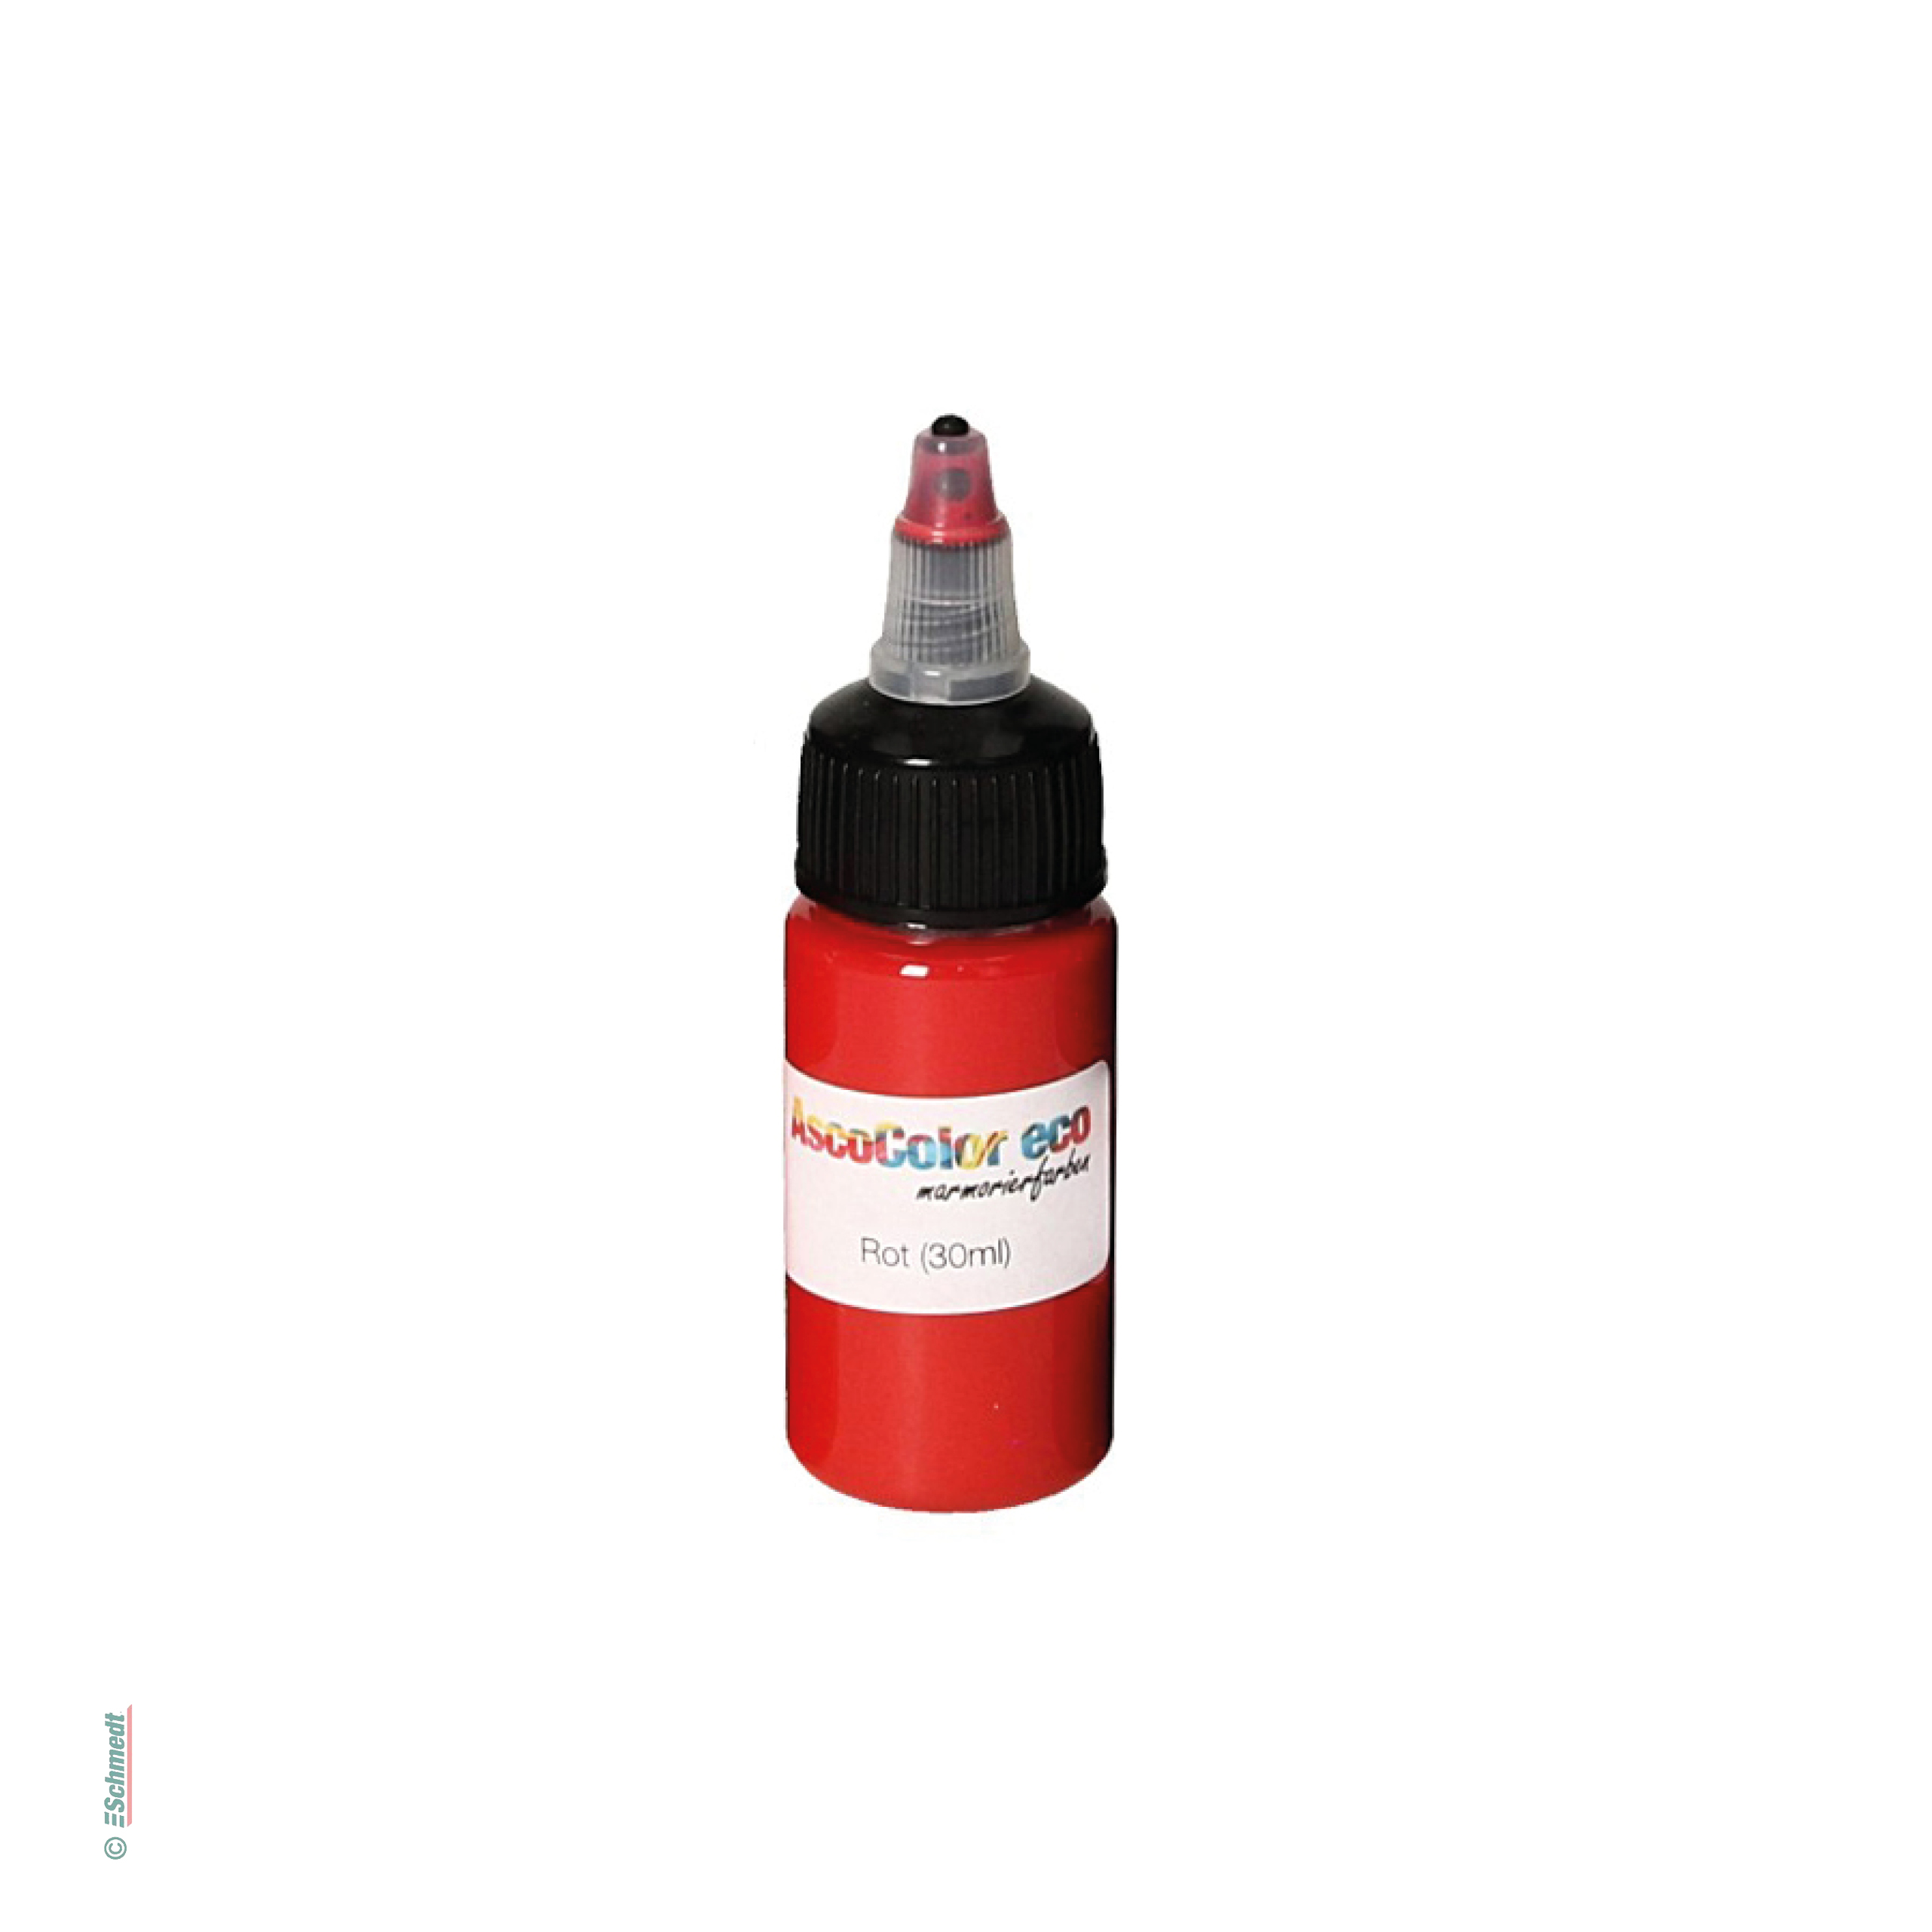 AscoColor eco - peinture à marbrer - Couleur 103 - rouge - Contenu Bouteille / 30 ml - pour créér papiers marbrés...